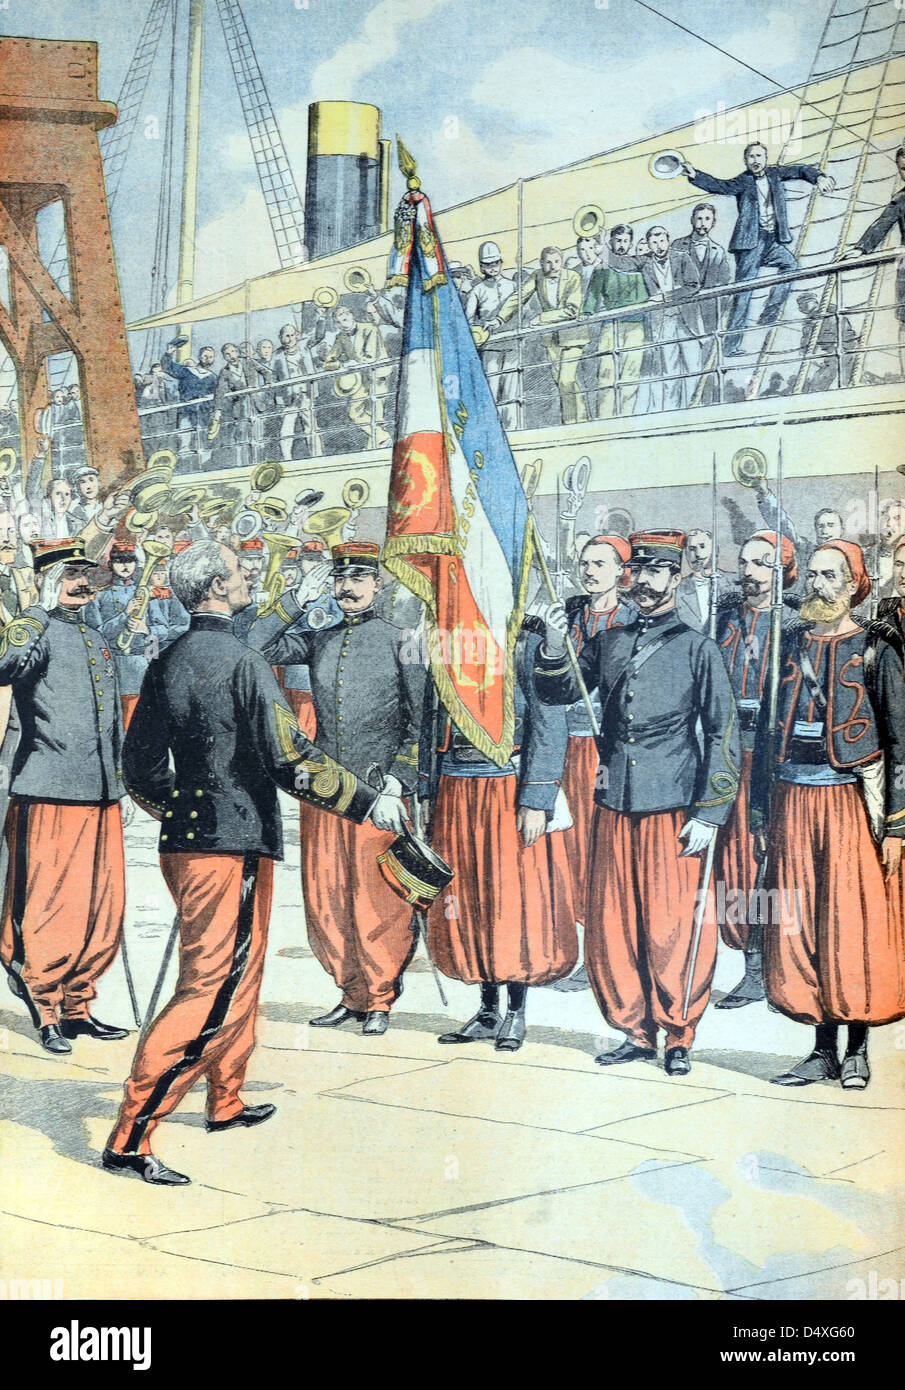 Zouave Regimiento de soldados franceses del norte de África en Marsella (julio de 1903) Francia. Grabado Vintage o Ilustración Foto de stock